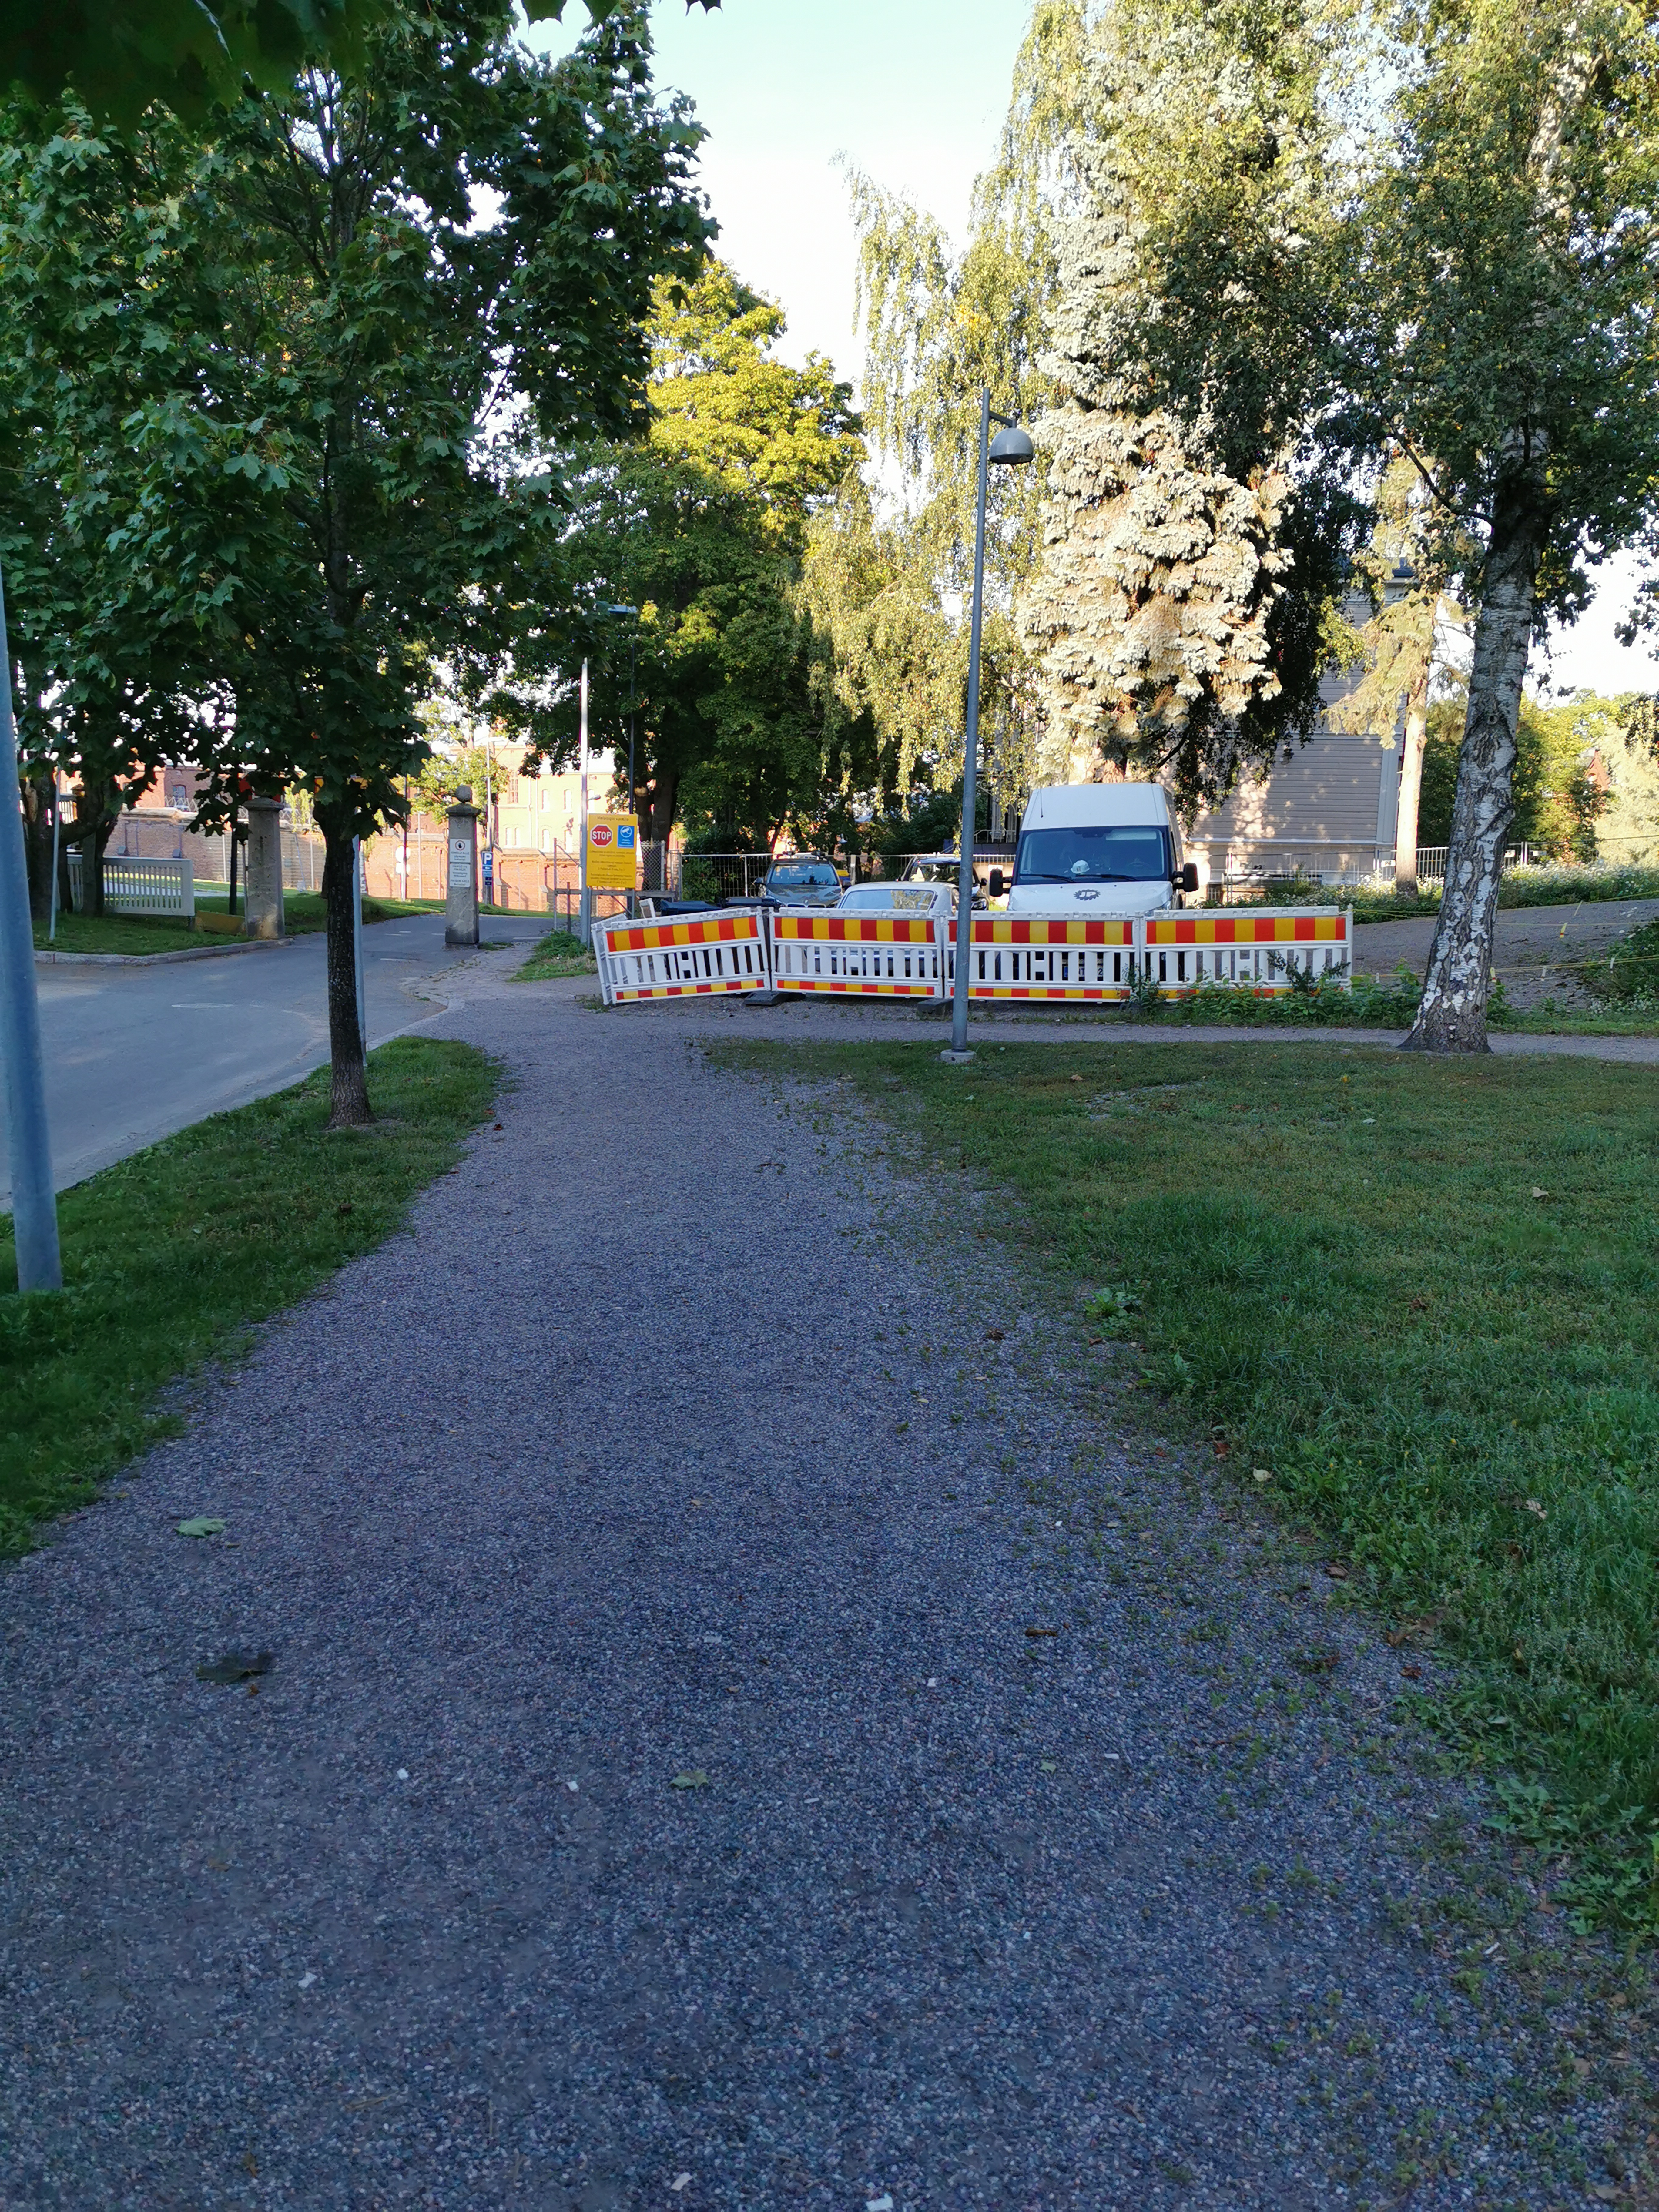 Katua, portti ja puurakennus. Todennäköisesti Ristikkokadulla, Helsingin vankilan lähellä. rephoto